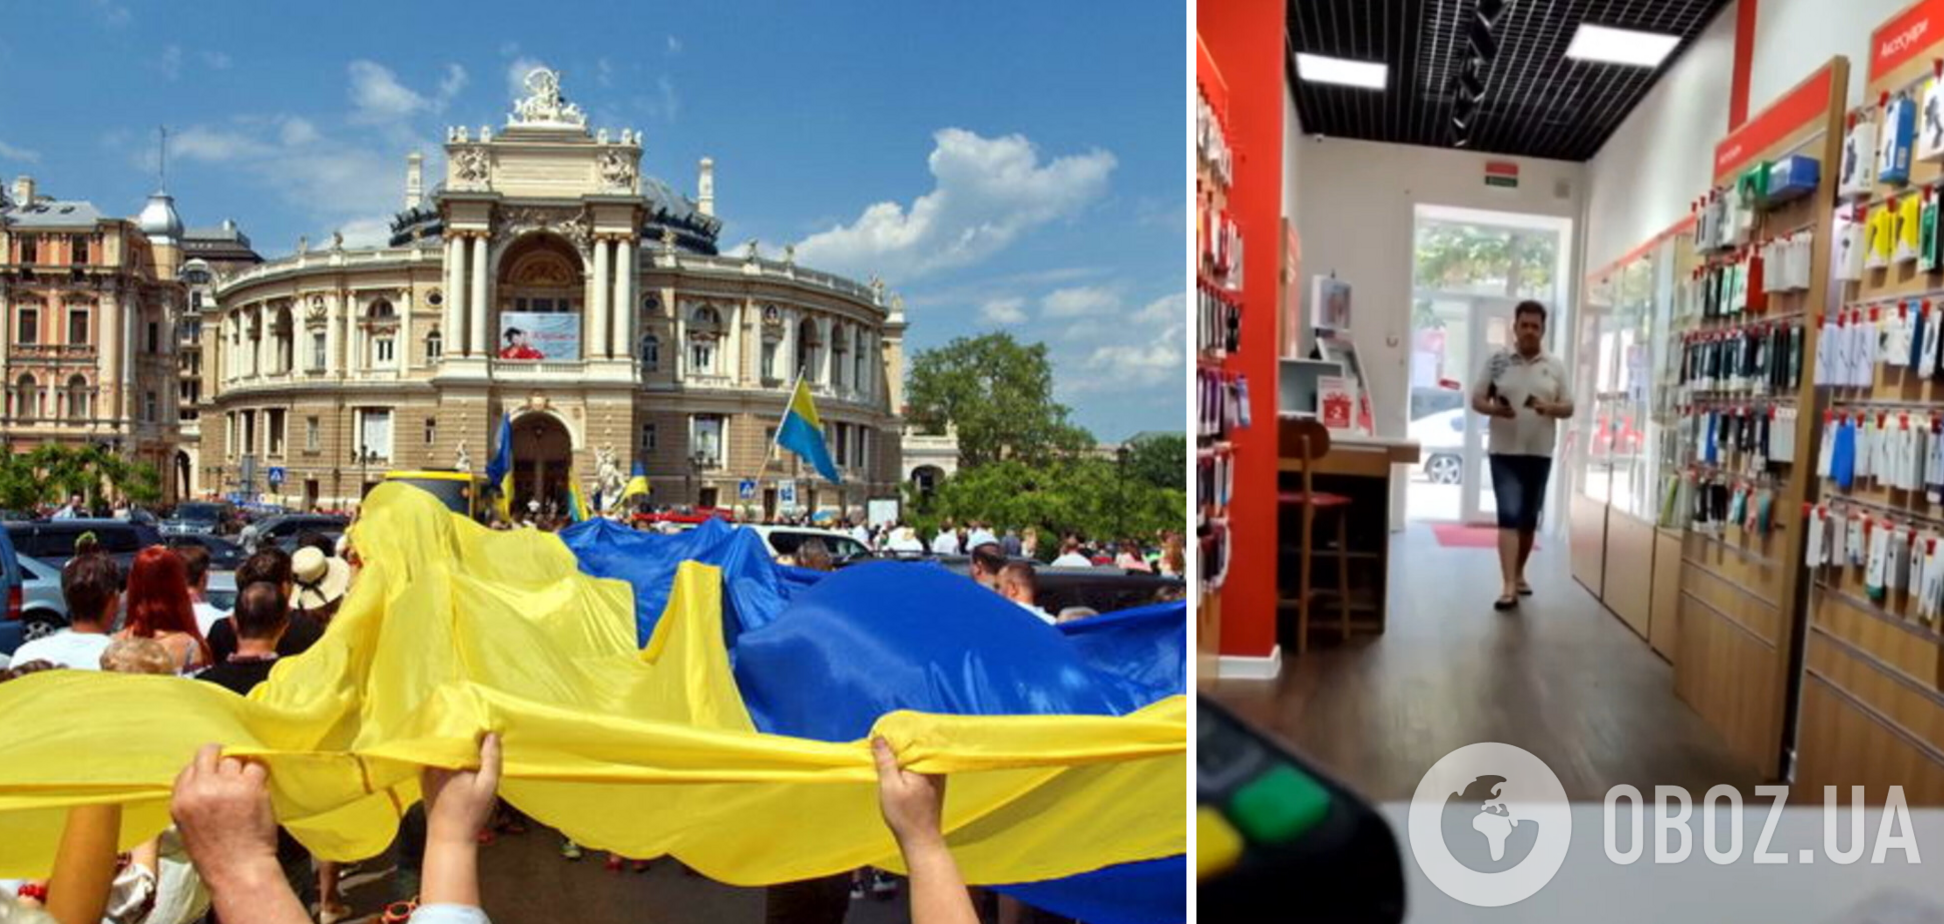 'Ти не в Україні, ти в Одесі!' Агресивний відвідувач магазину влаштував скандал, але його поставили на місце. Відео